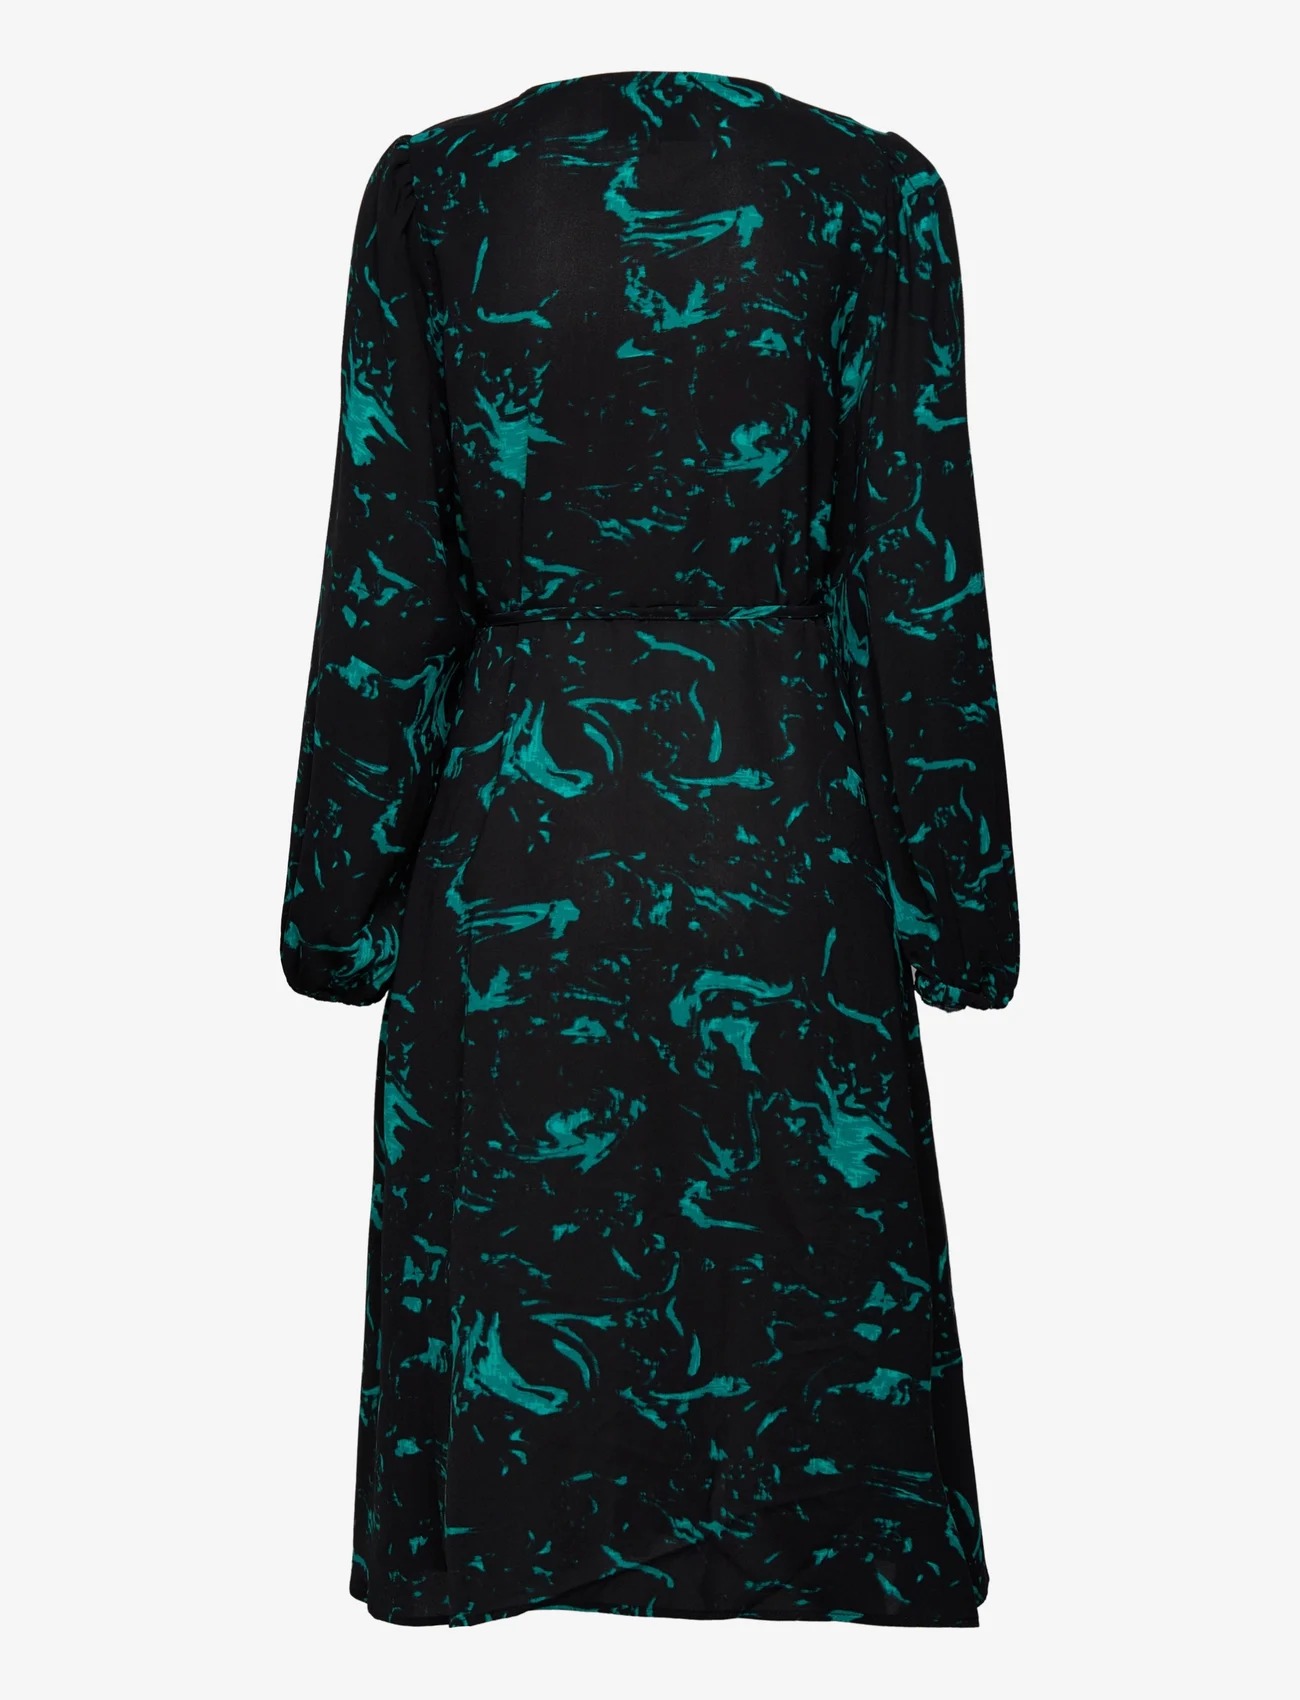 Minus - Selena Slå-om Kjole - wrap dresses - ocean green swirl print - 1